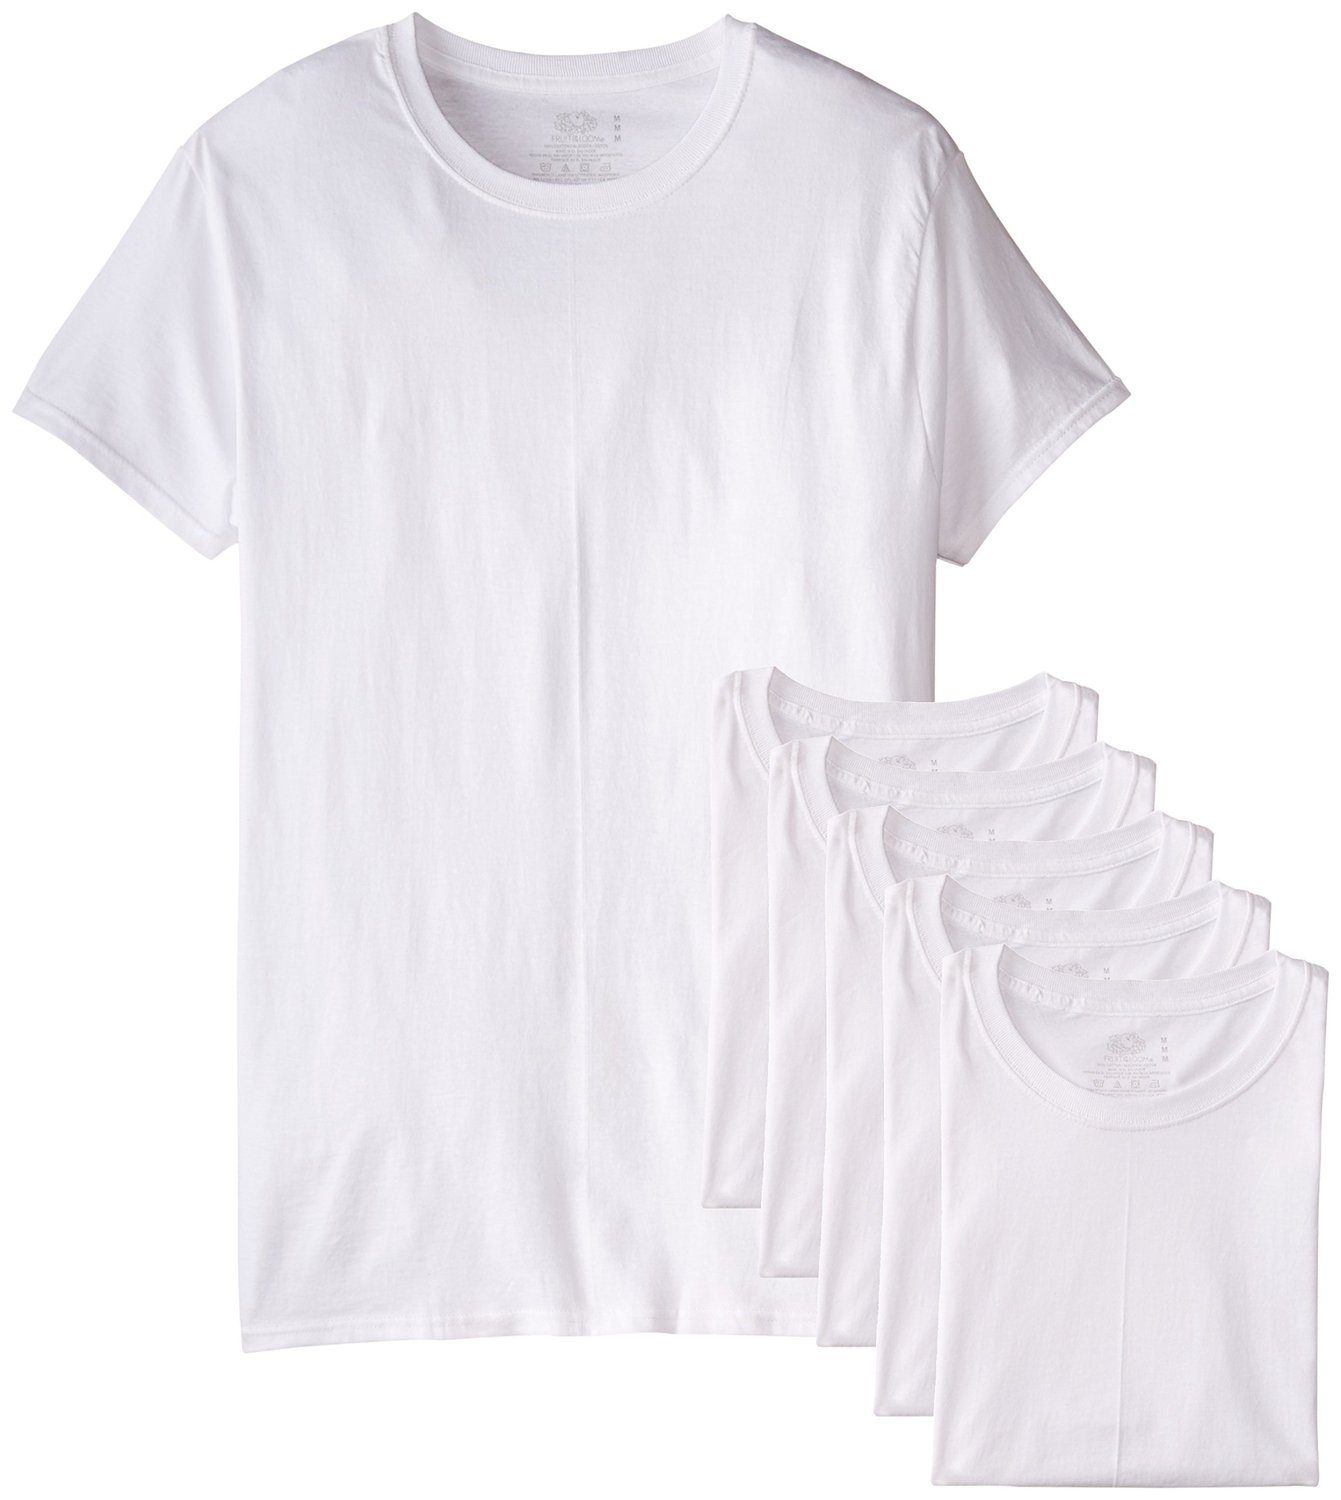 Men's Short Sleeve Crew T-Shirt, White 6 Pack